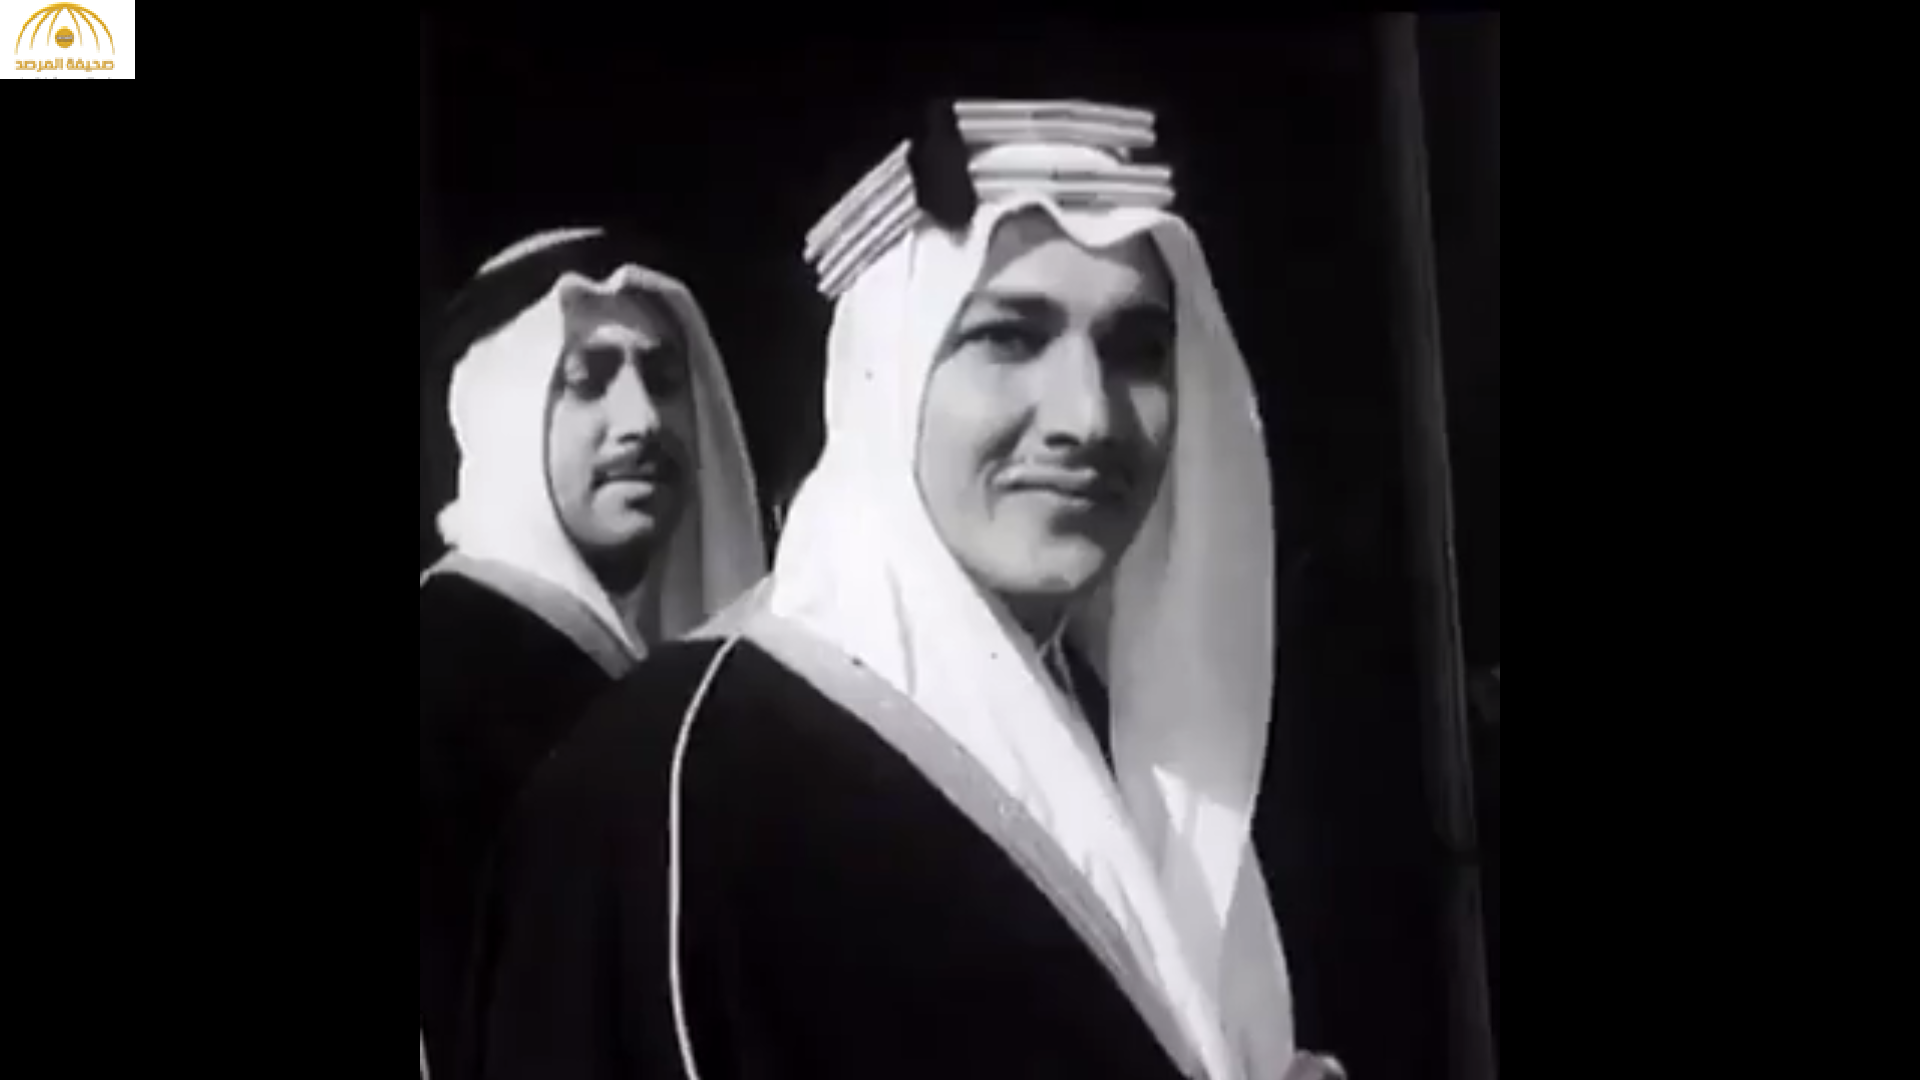 شاهد: خالد بن طلال ينشر فيديو قديم لوالده وهو يحمل "سيفا" أثناء تعيينه سفيرًا للمملكة في فرنسا